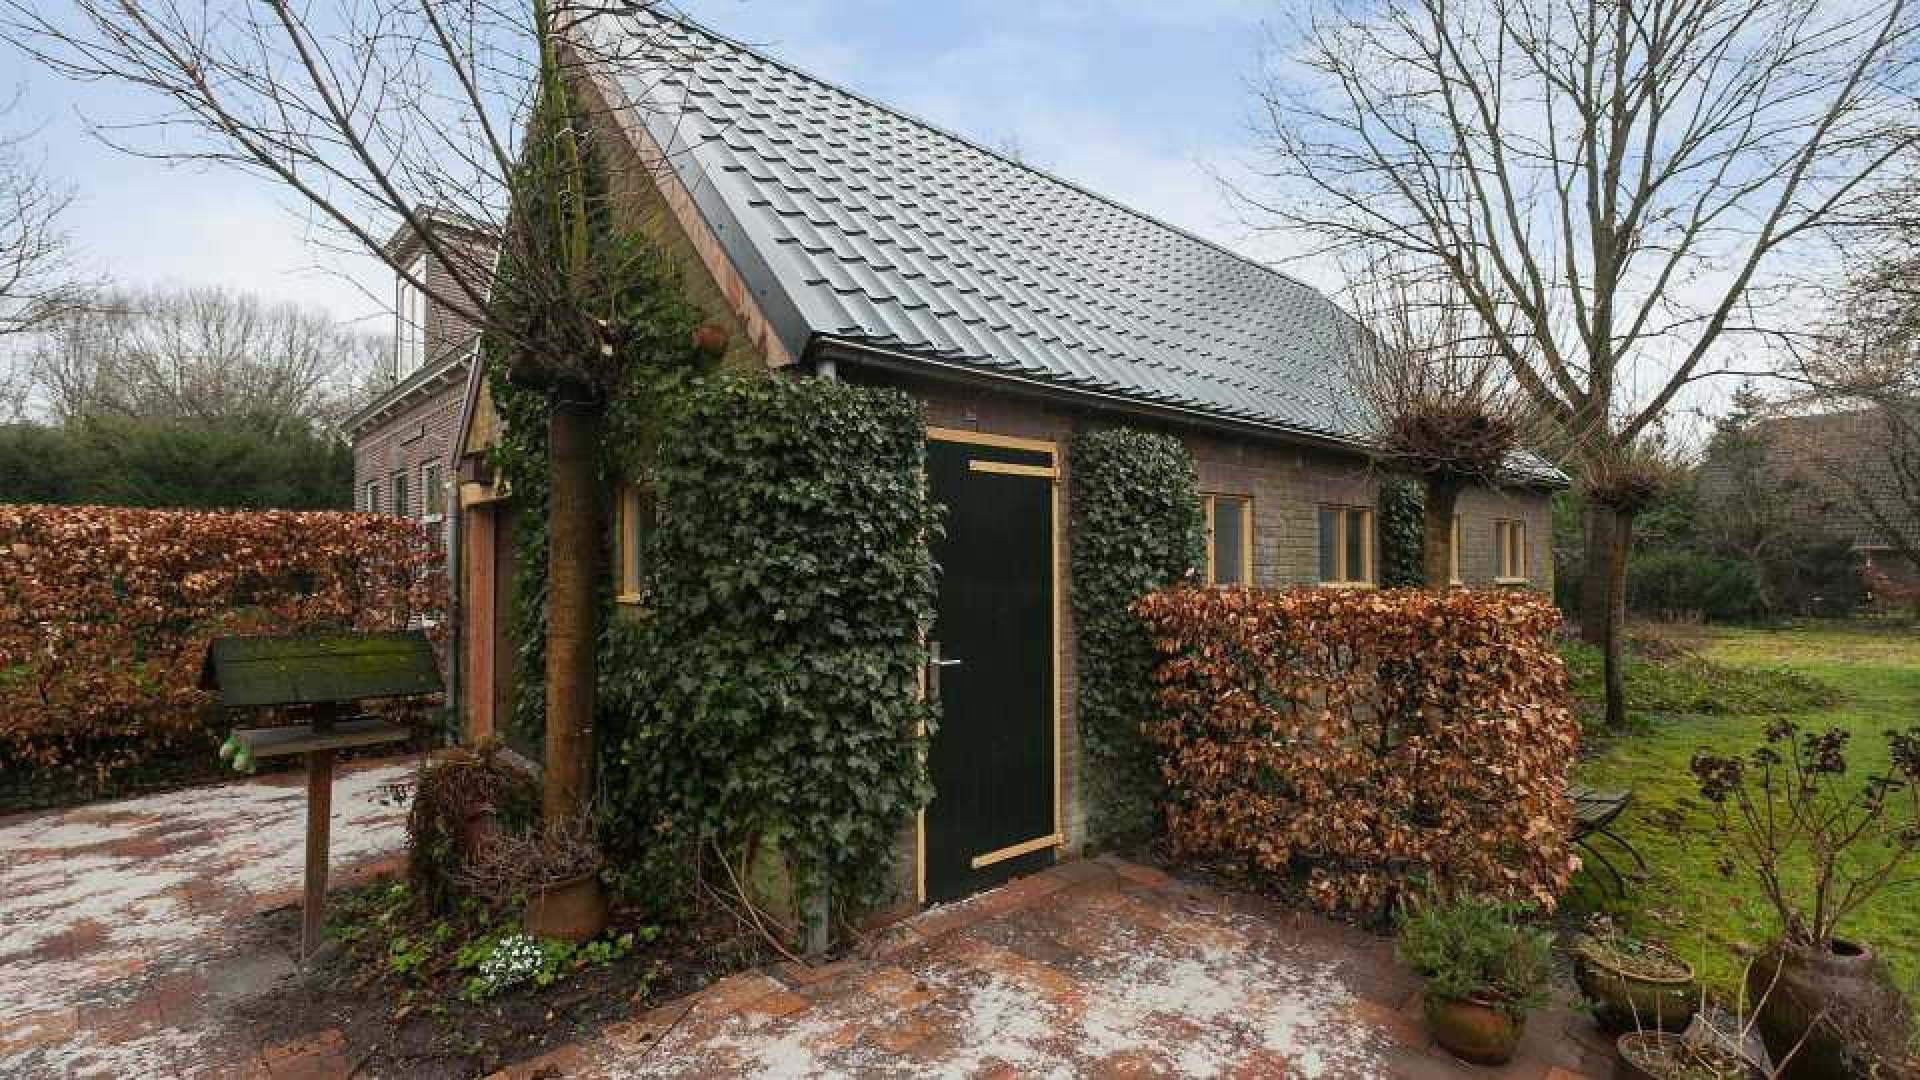 Dit is in 2020 het best bekeken huis op bekendeburen.nl